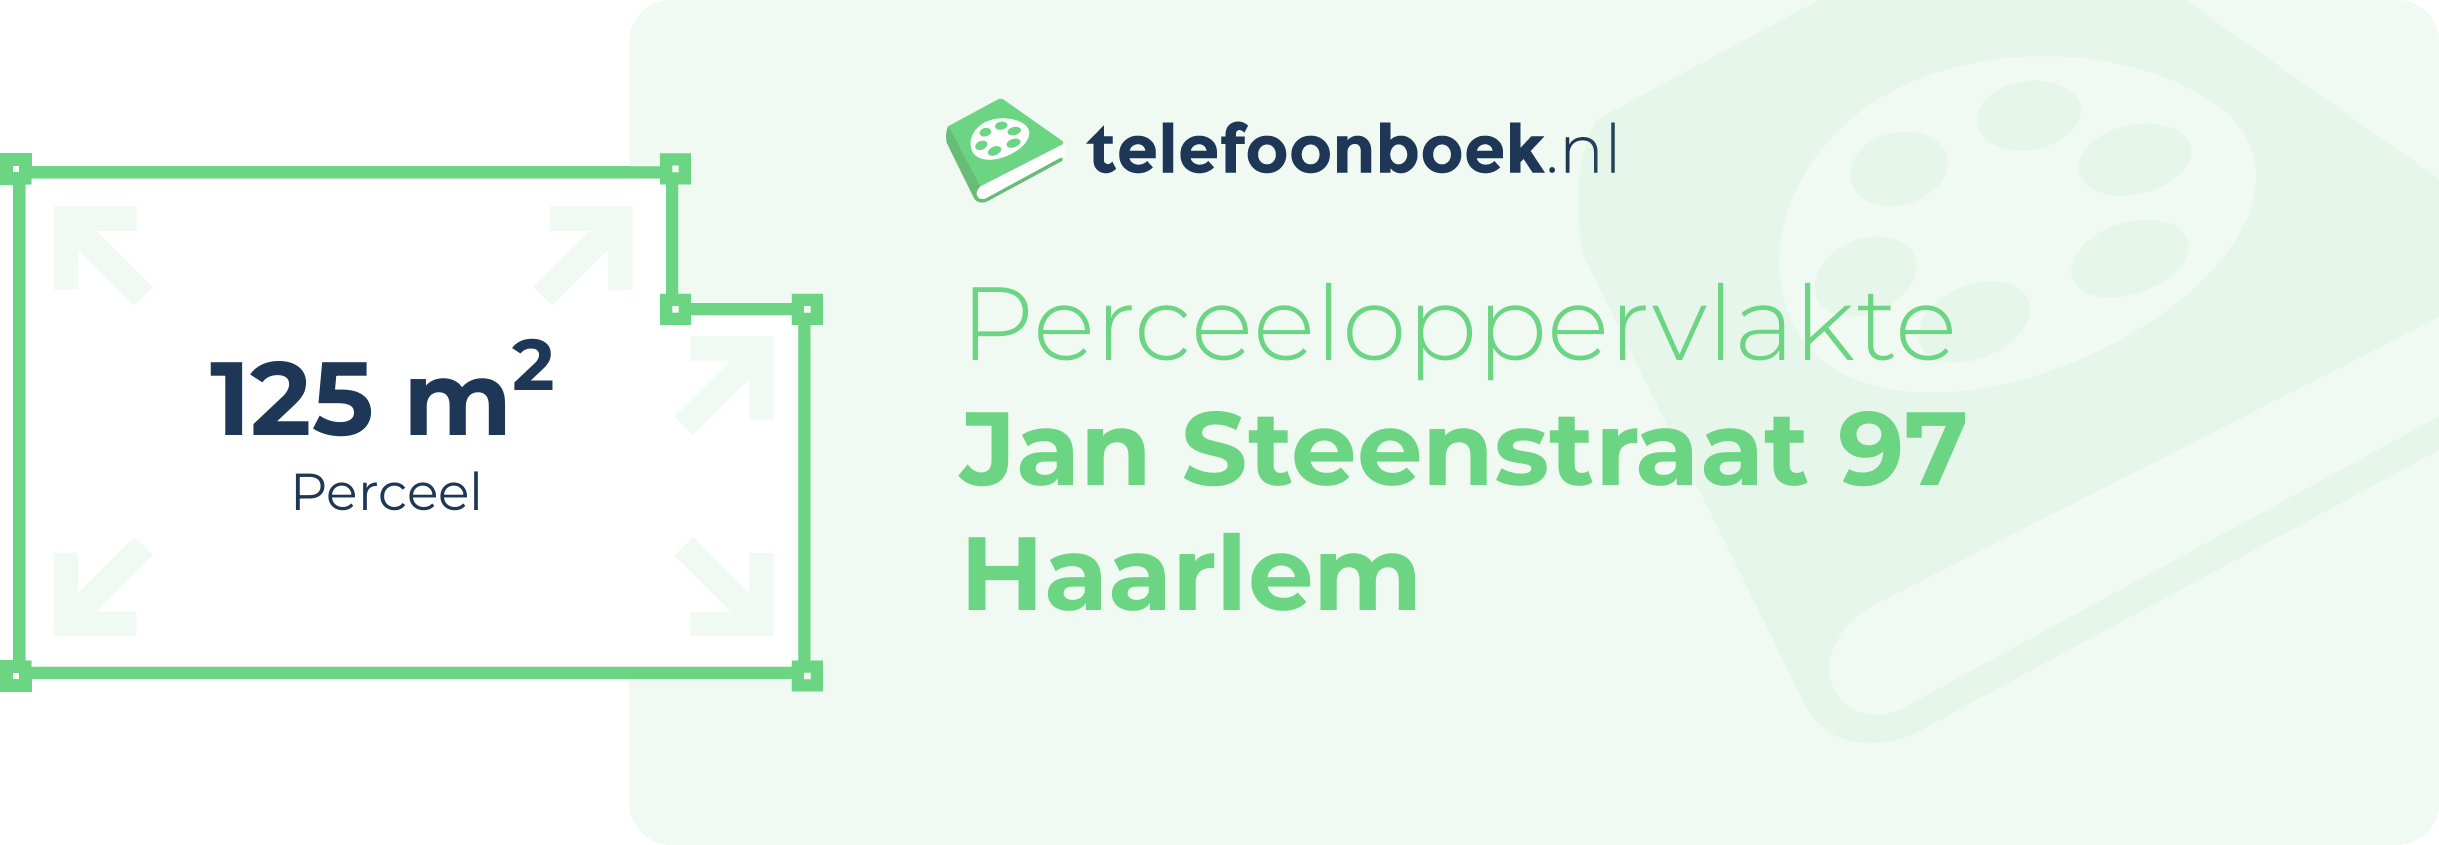 Perceeloppervlakte Jan Steenstraat 97 Haarlem